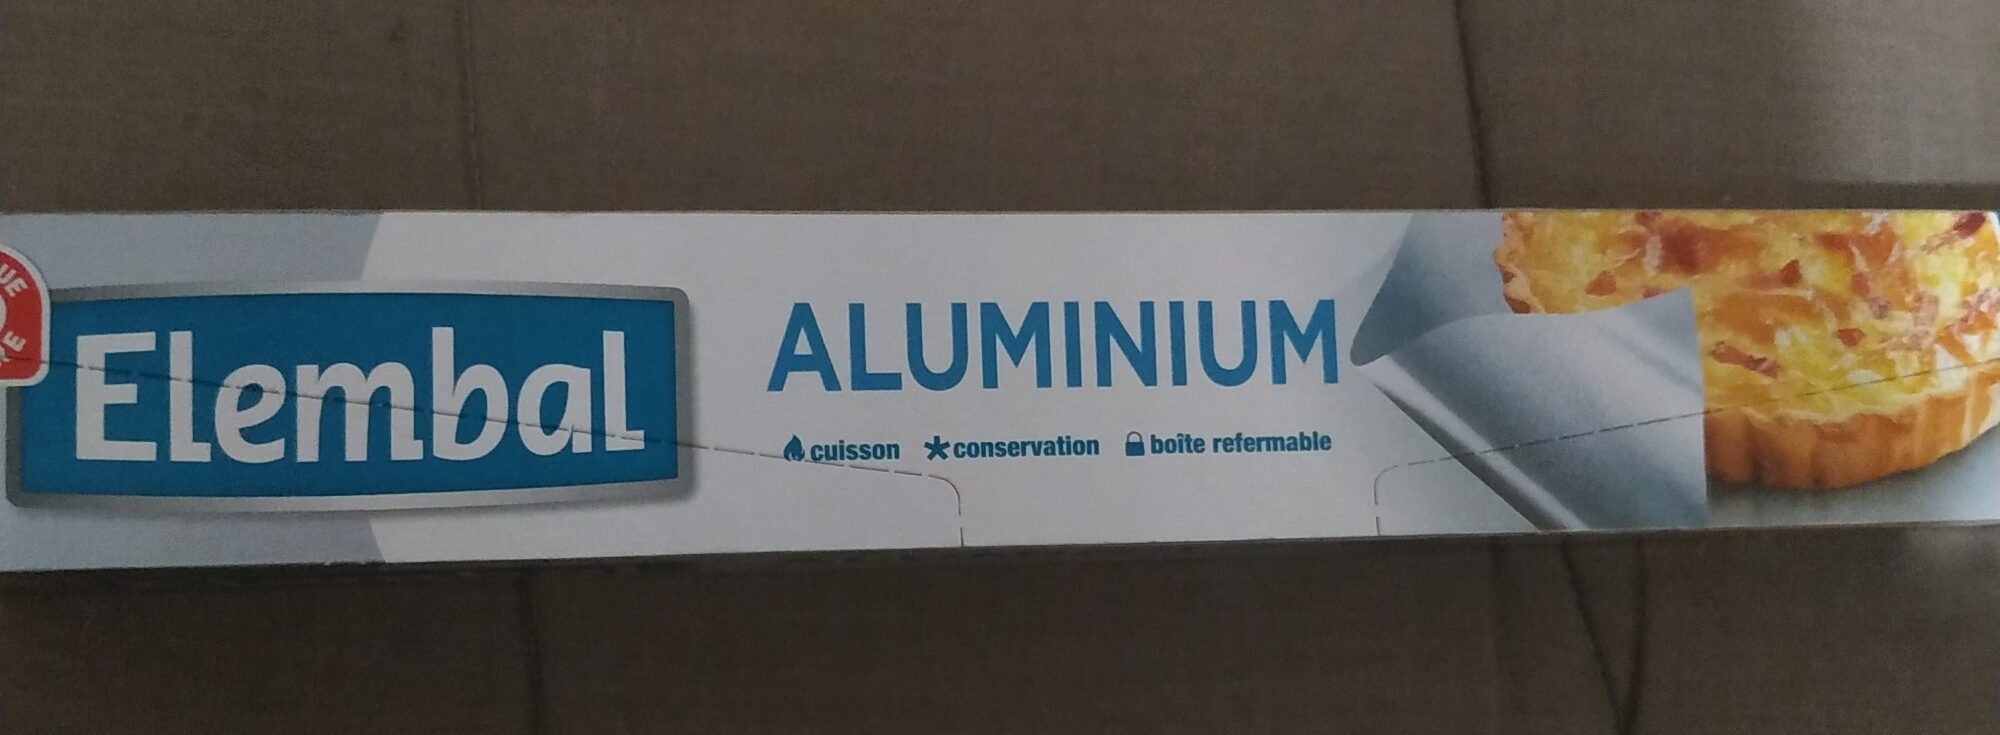 Papier Aluminium, Rouleau De 50 Mètres - Product - fr